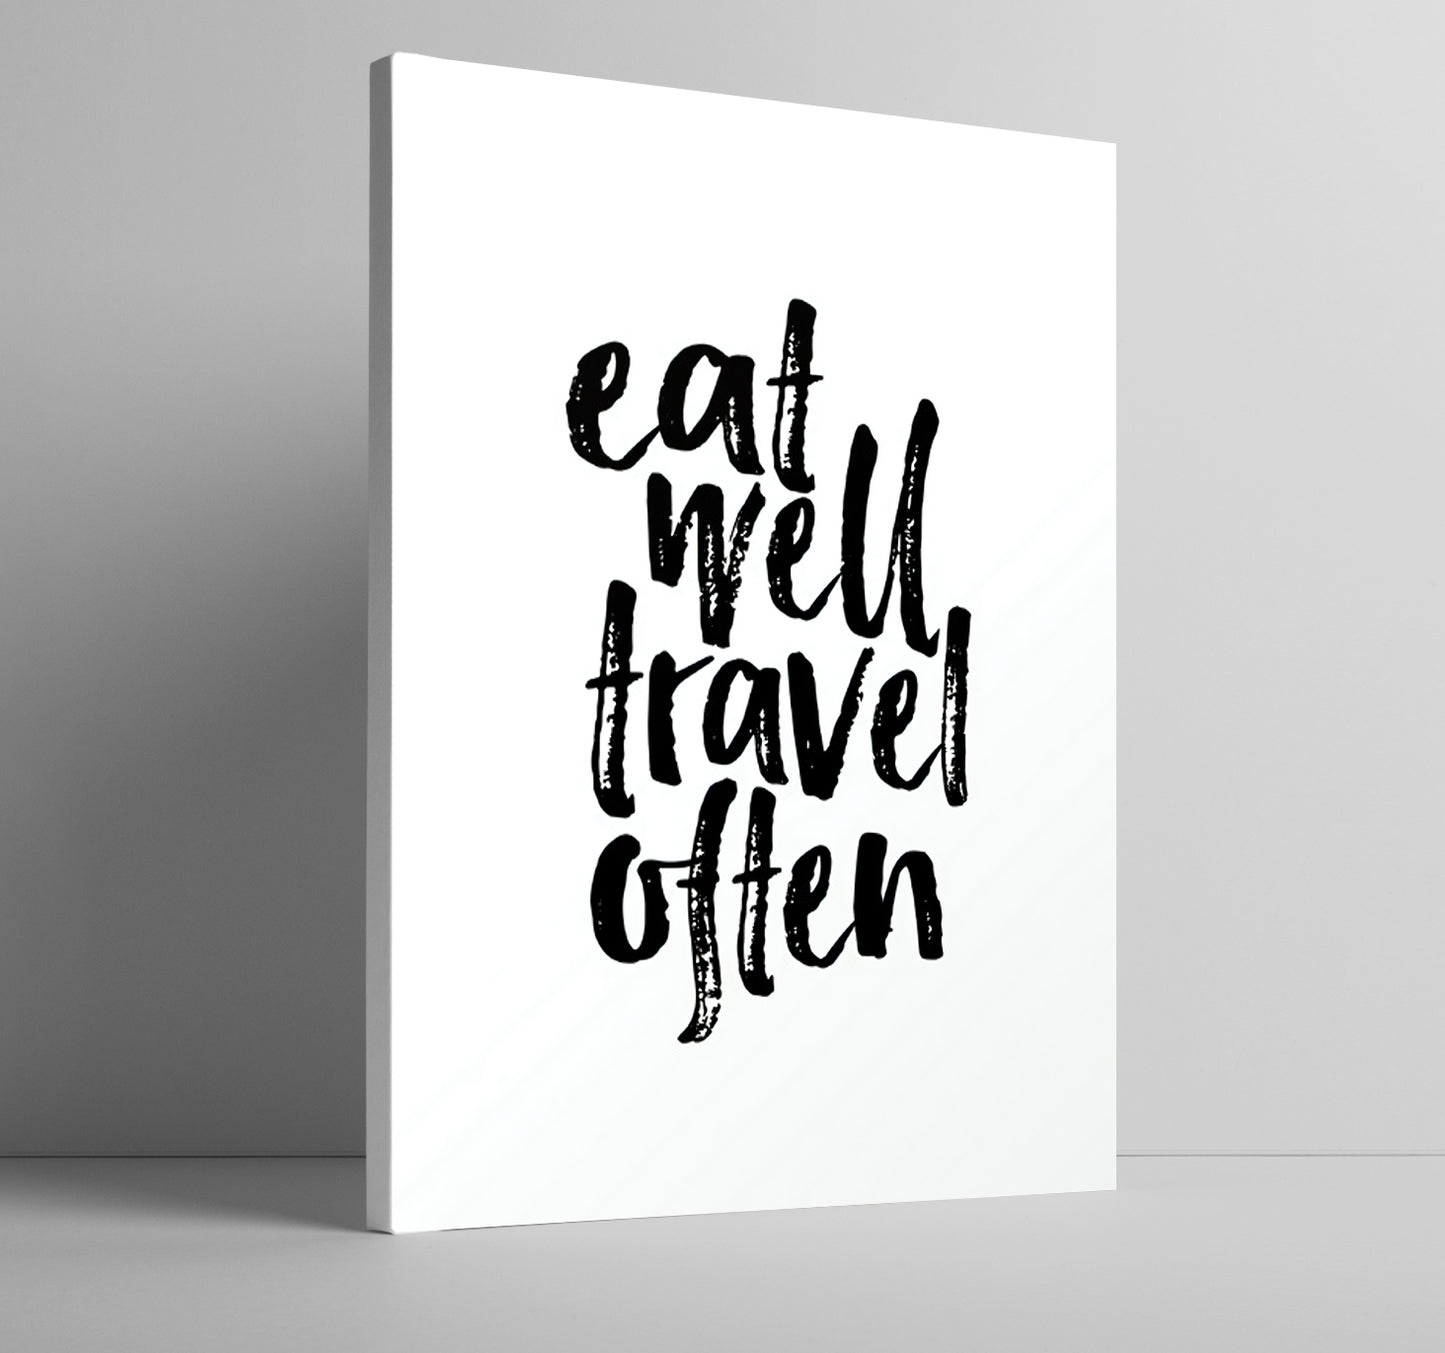 Eat well, travel often